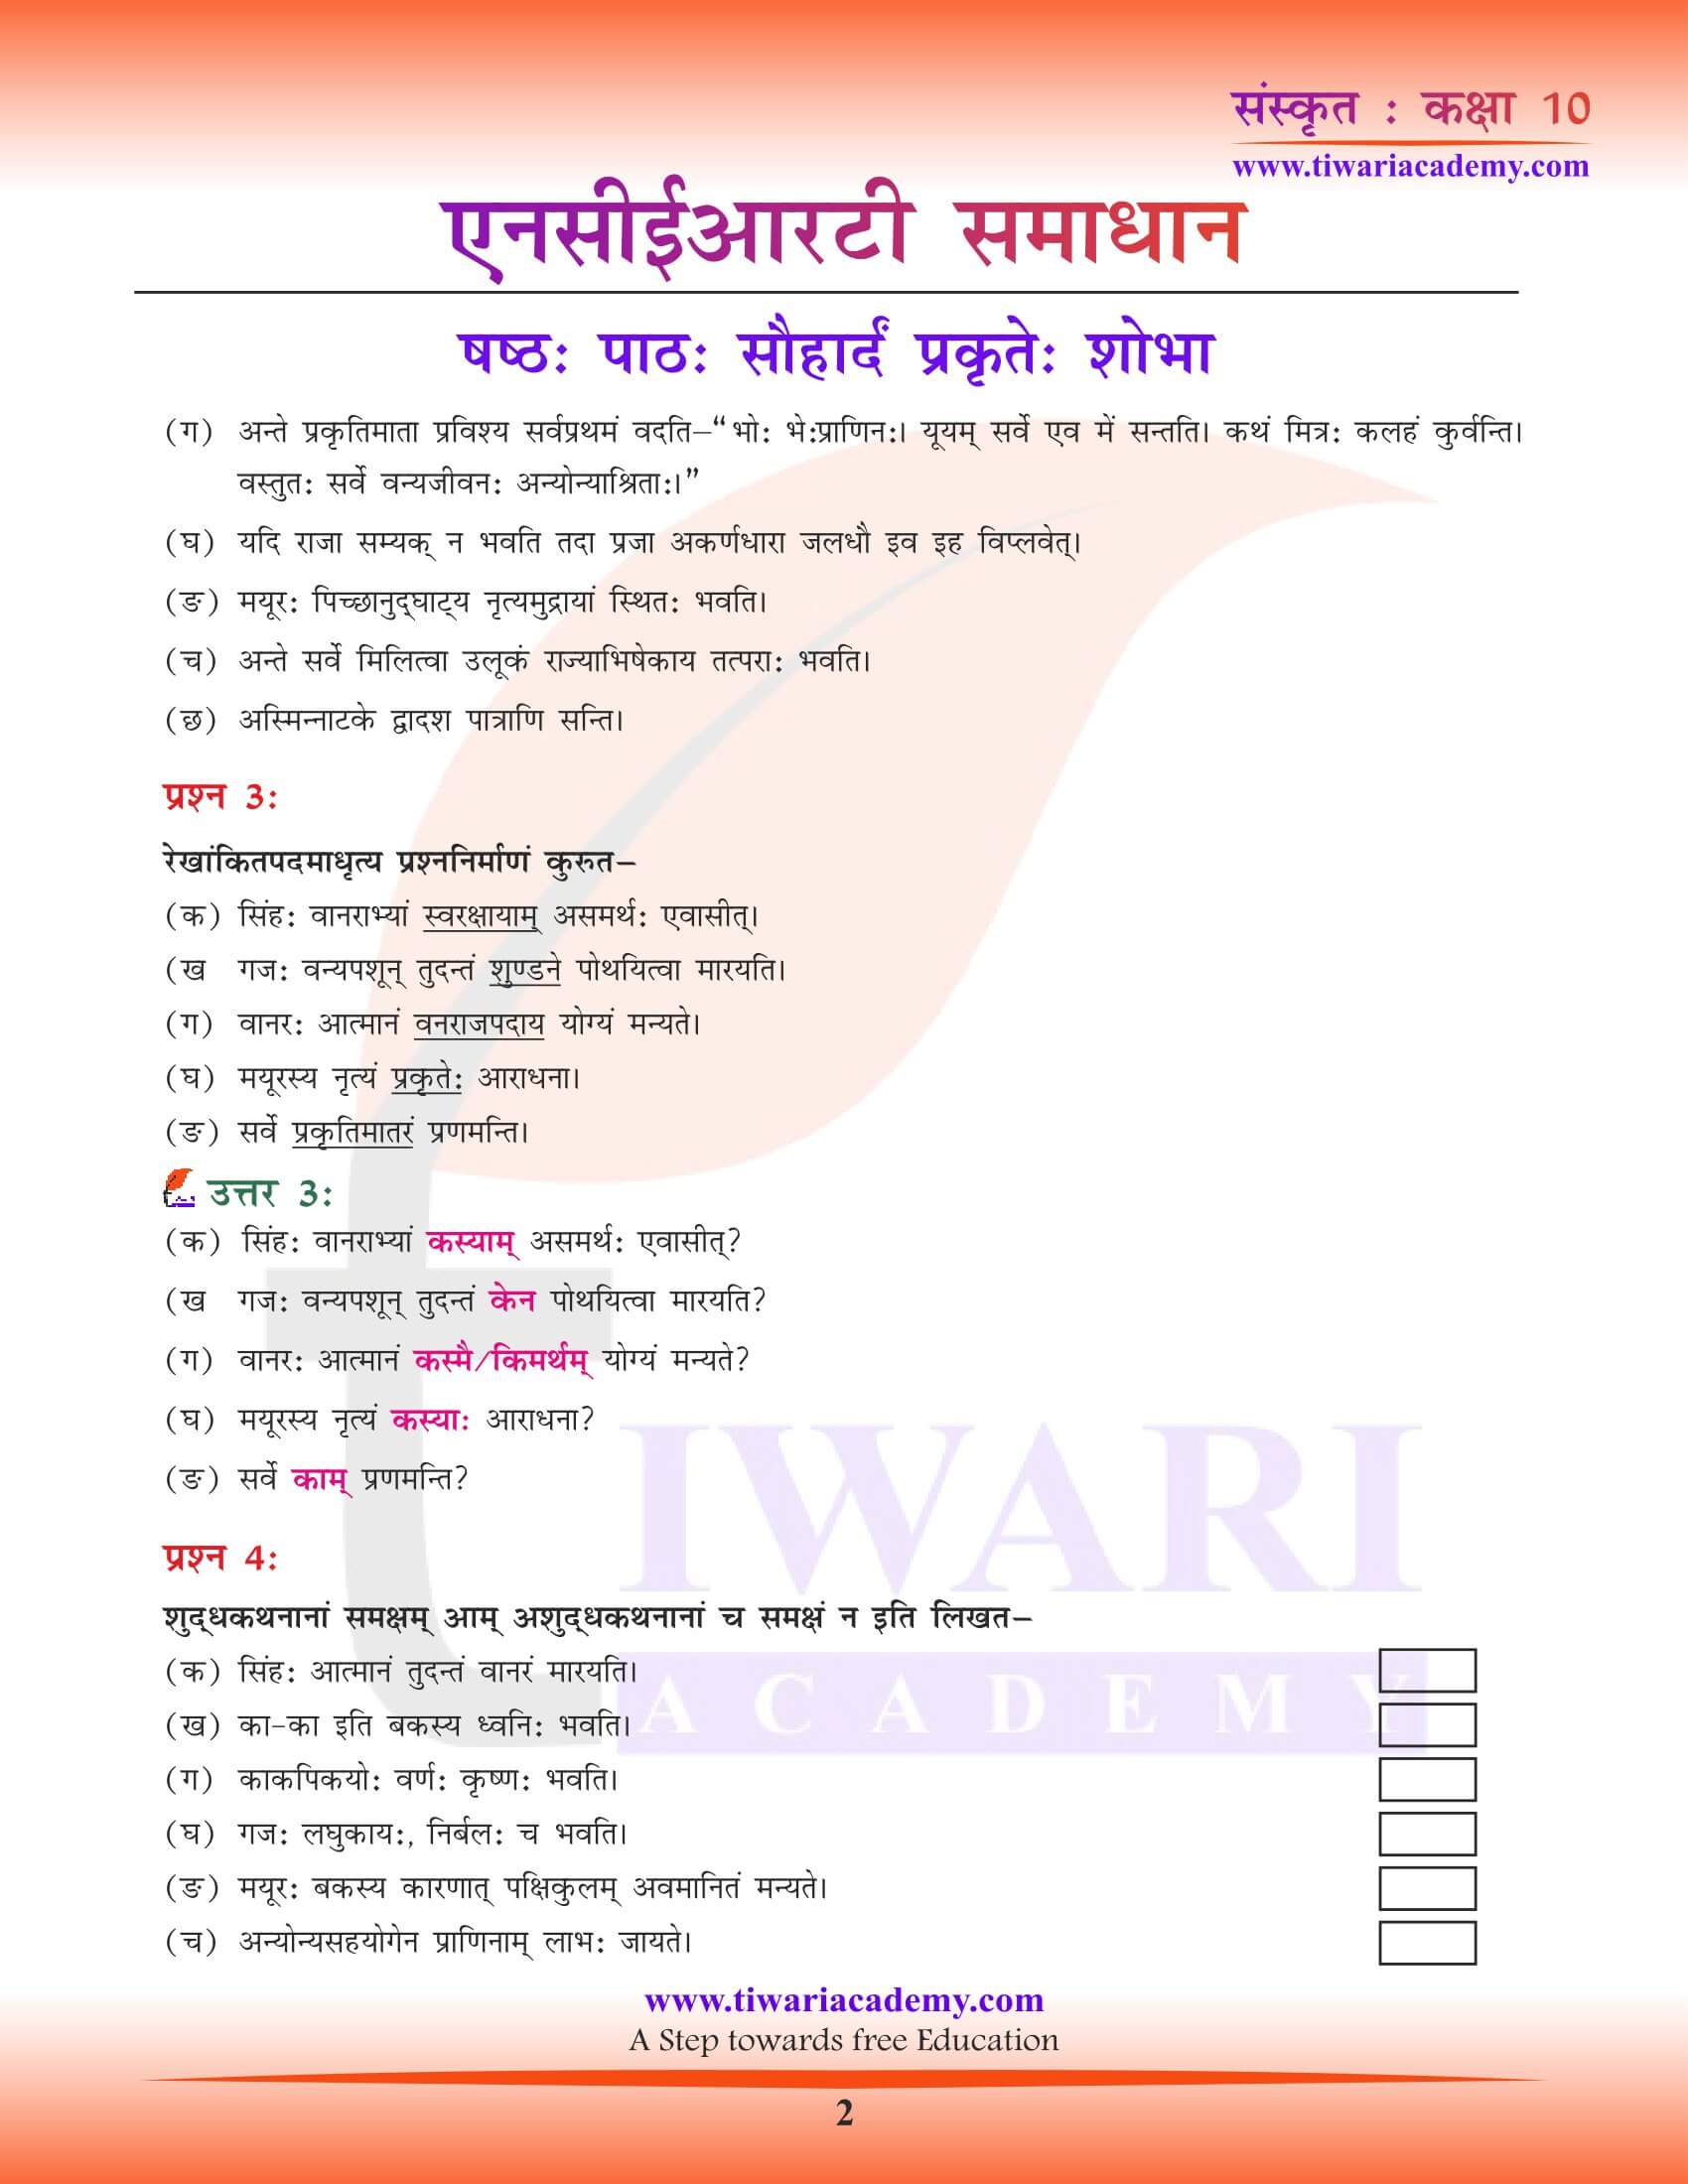 कक्षा 10 संस्कृत पाठ 6 सौहार्दं प्रकृते: शोभा